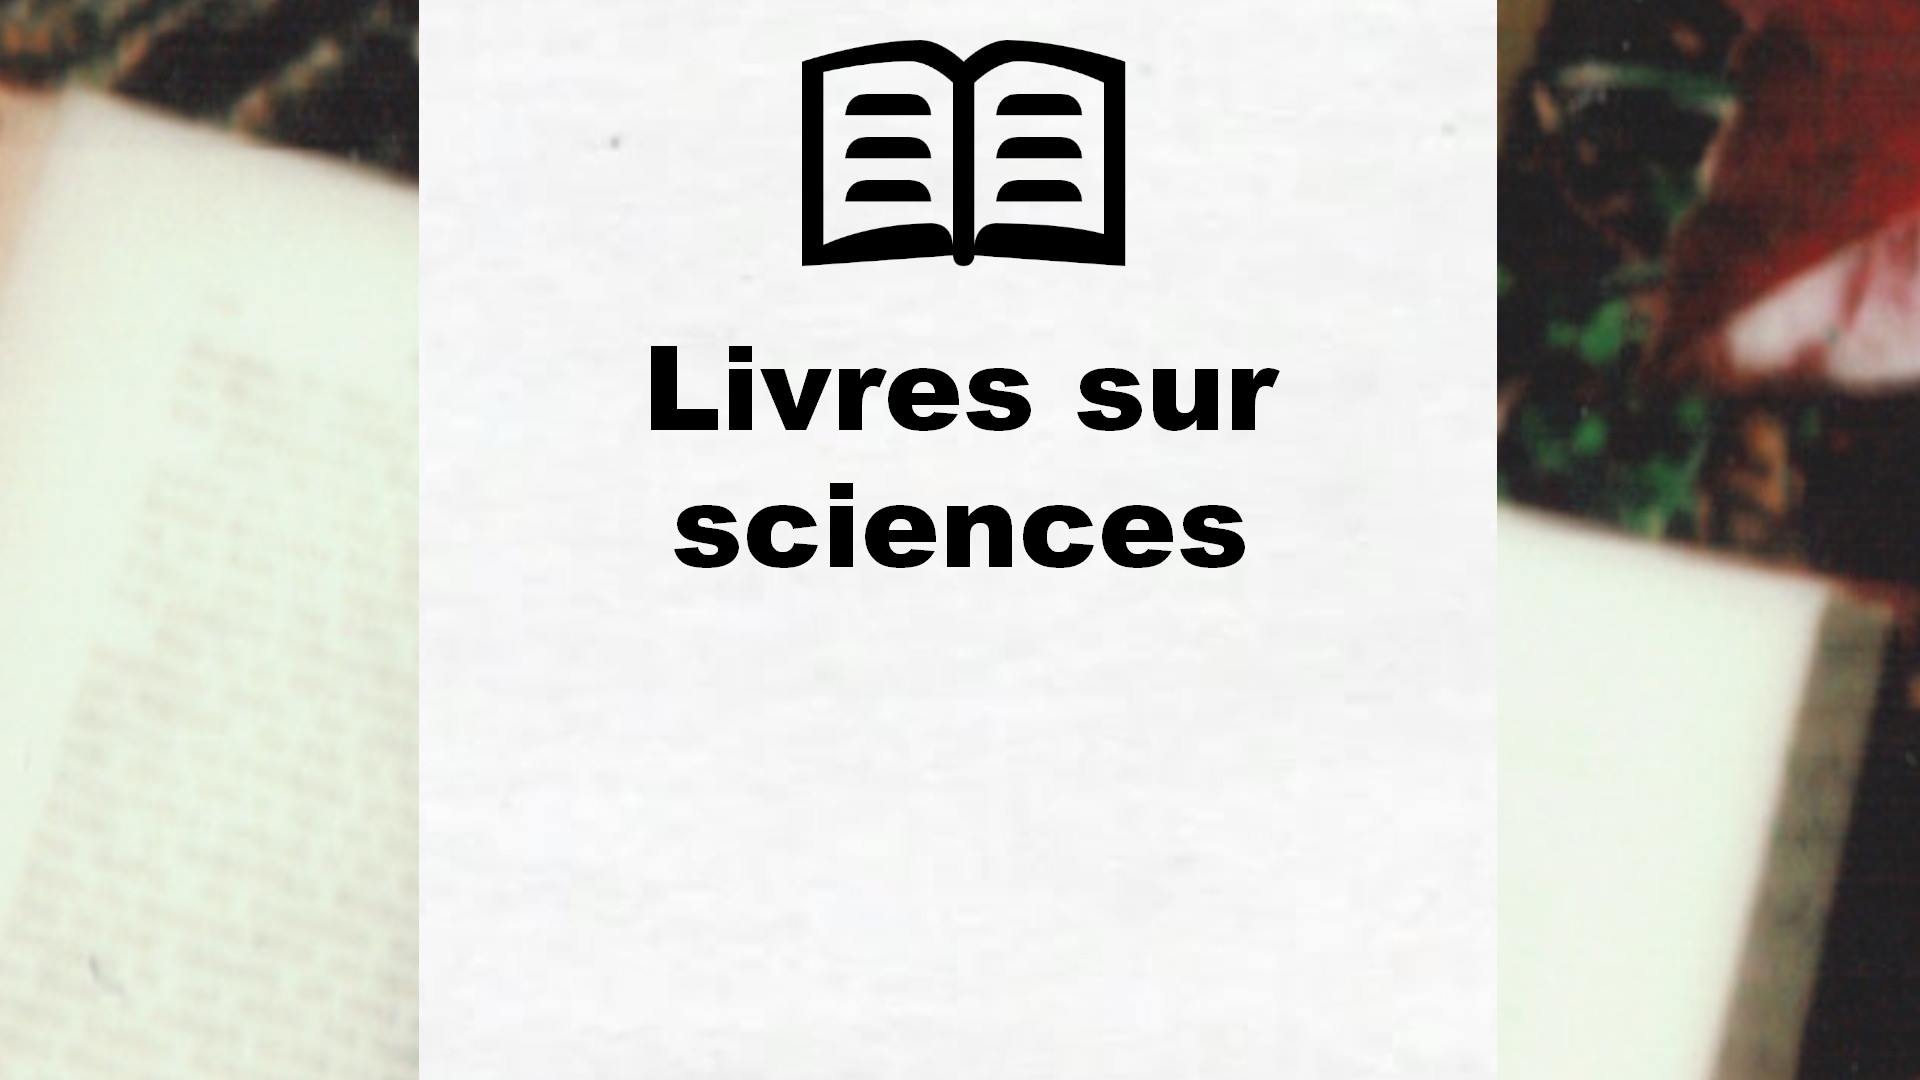 Livres sur sciences